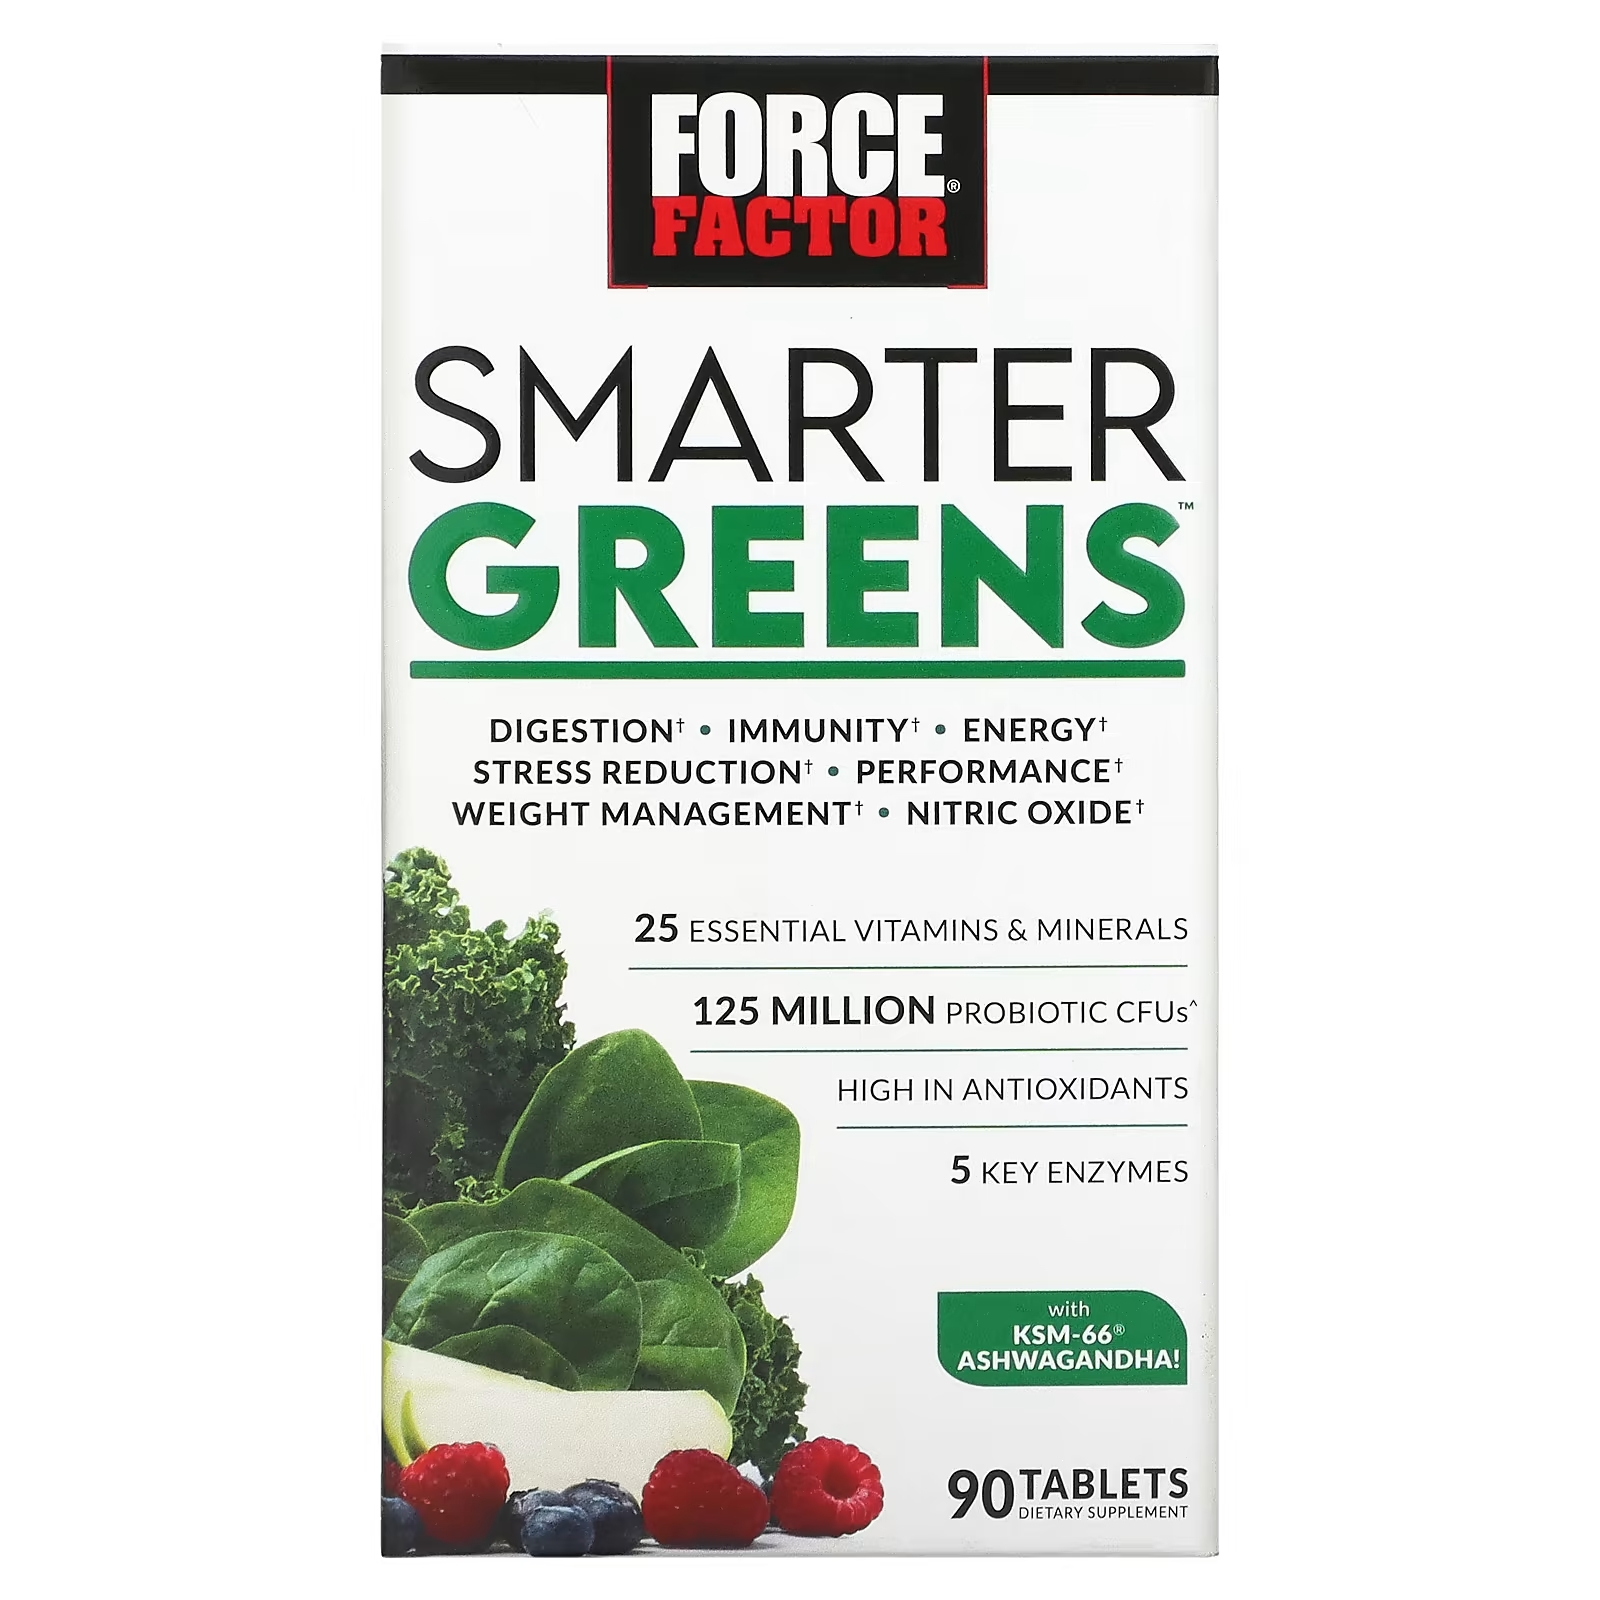 Травяная Добавка Force Factor Smarter Greens, 90 таблеток суперфуды и порошок для улучшения пищеварения force factor smarter greens гранат 419 г